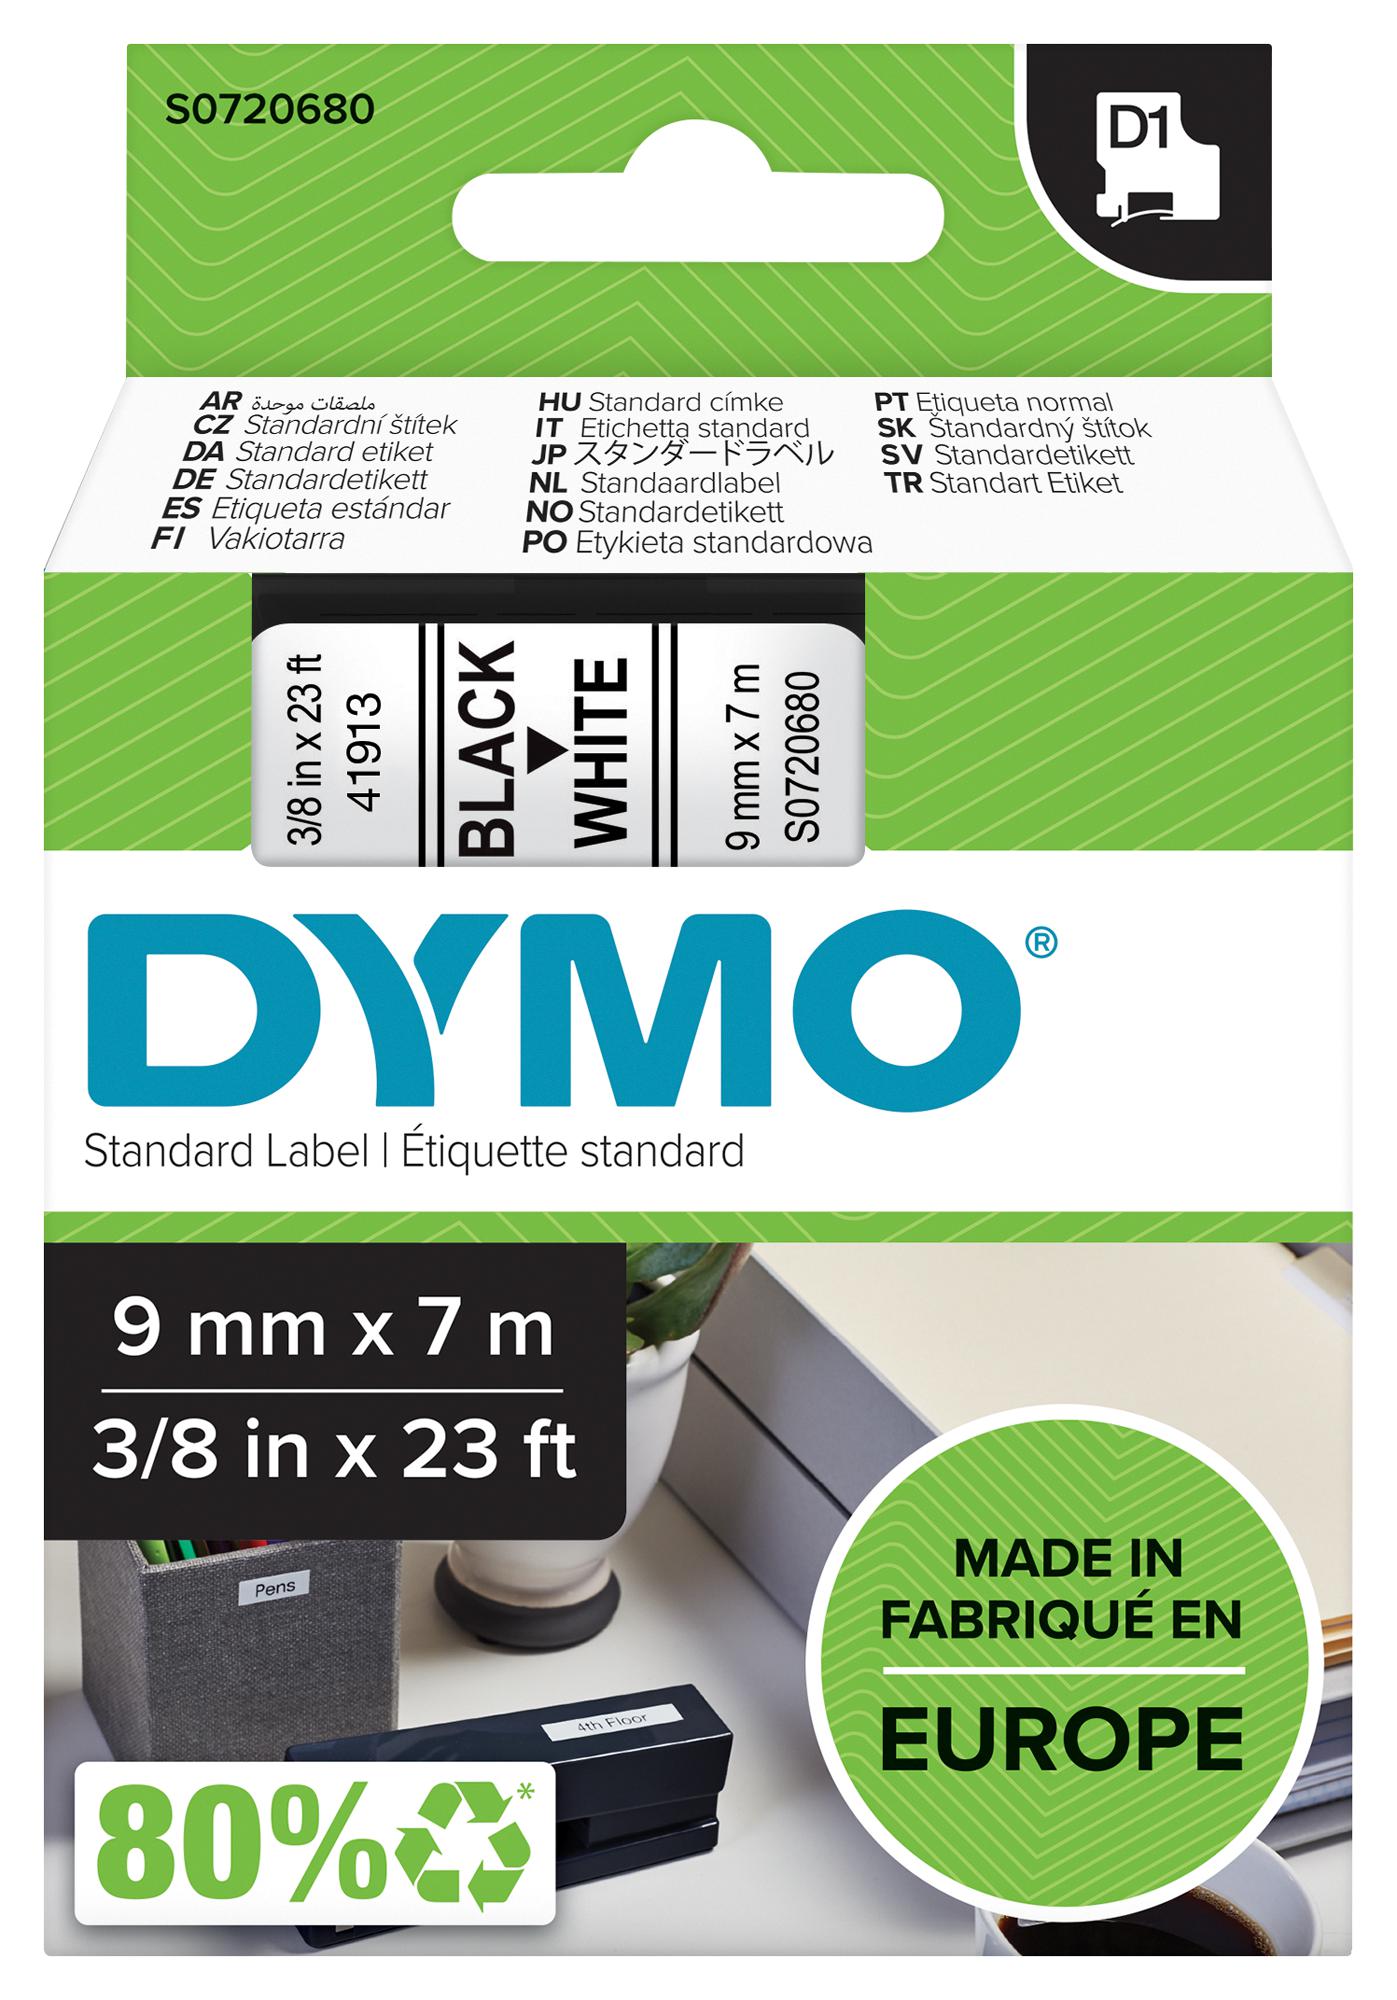 Dymo 40913 Tape, Black/white, 9mm